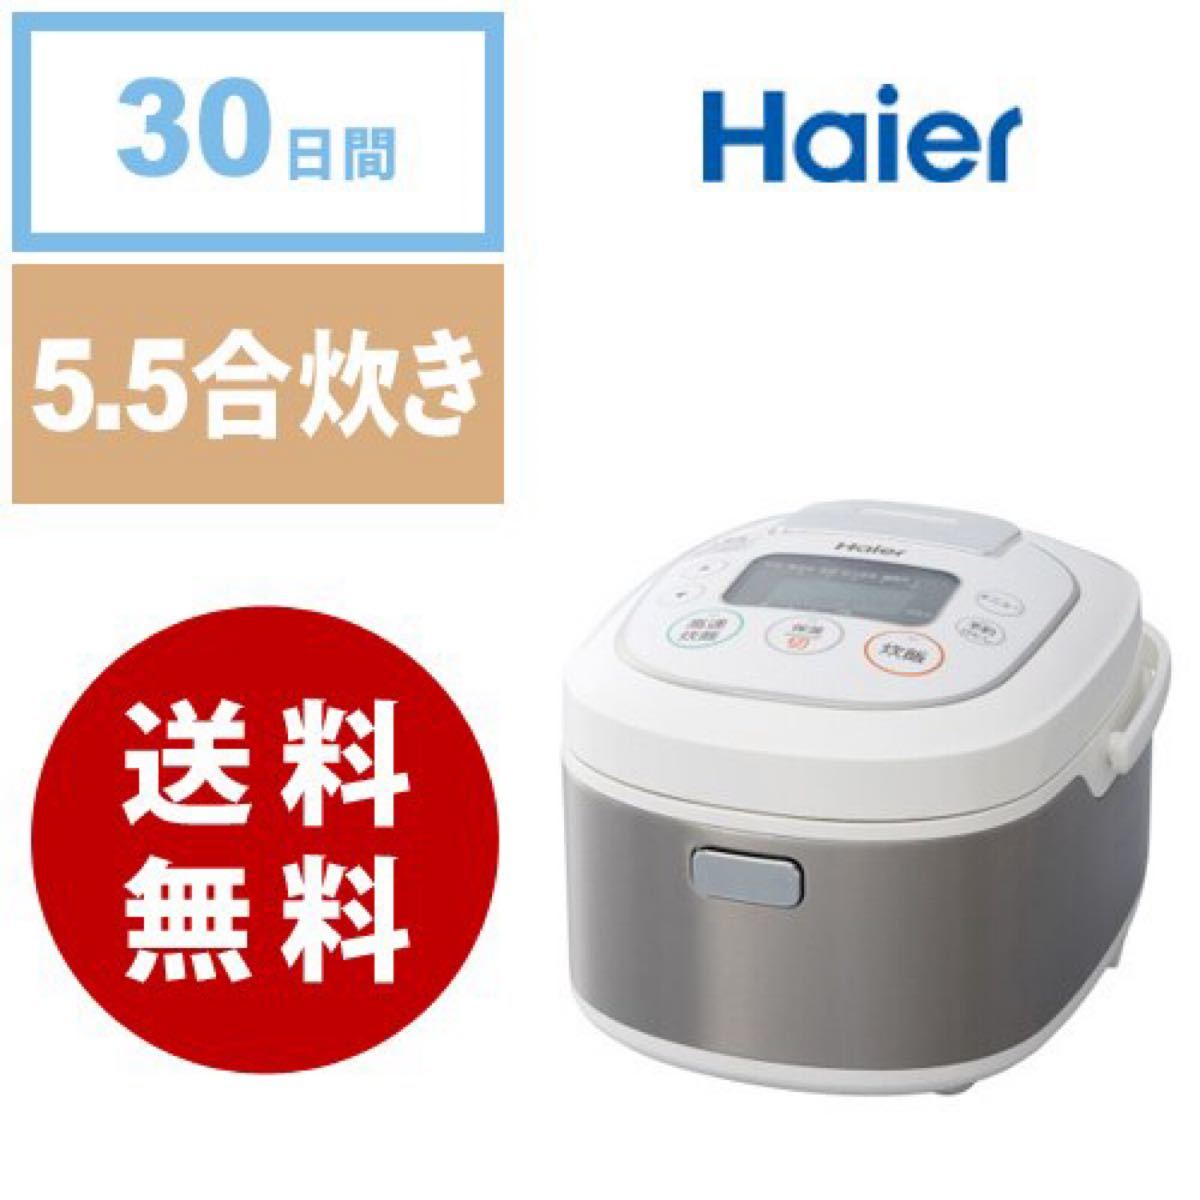 今年も話題の Haier 炊飯器 JJ-M56A 5.5合炊き sushitai.com.mx